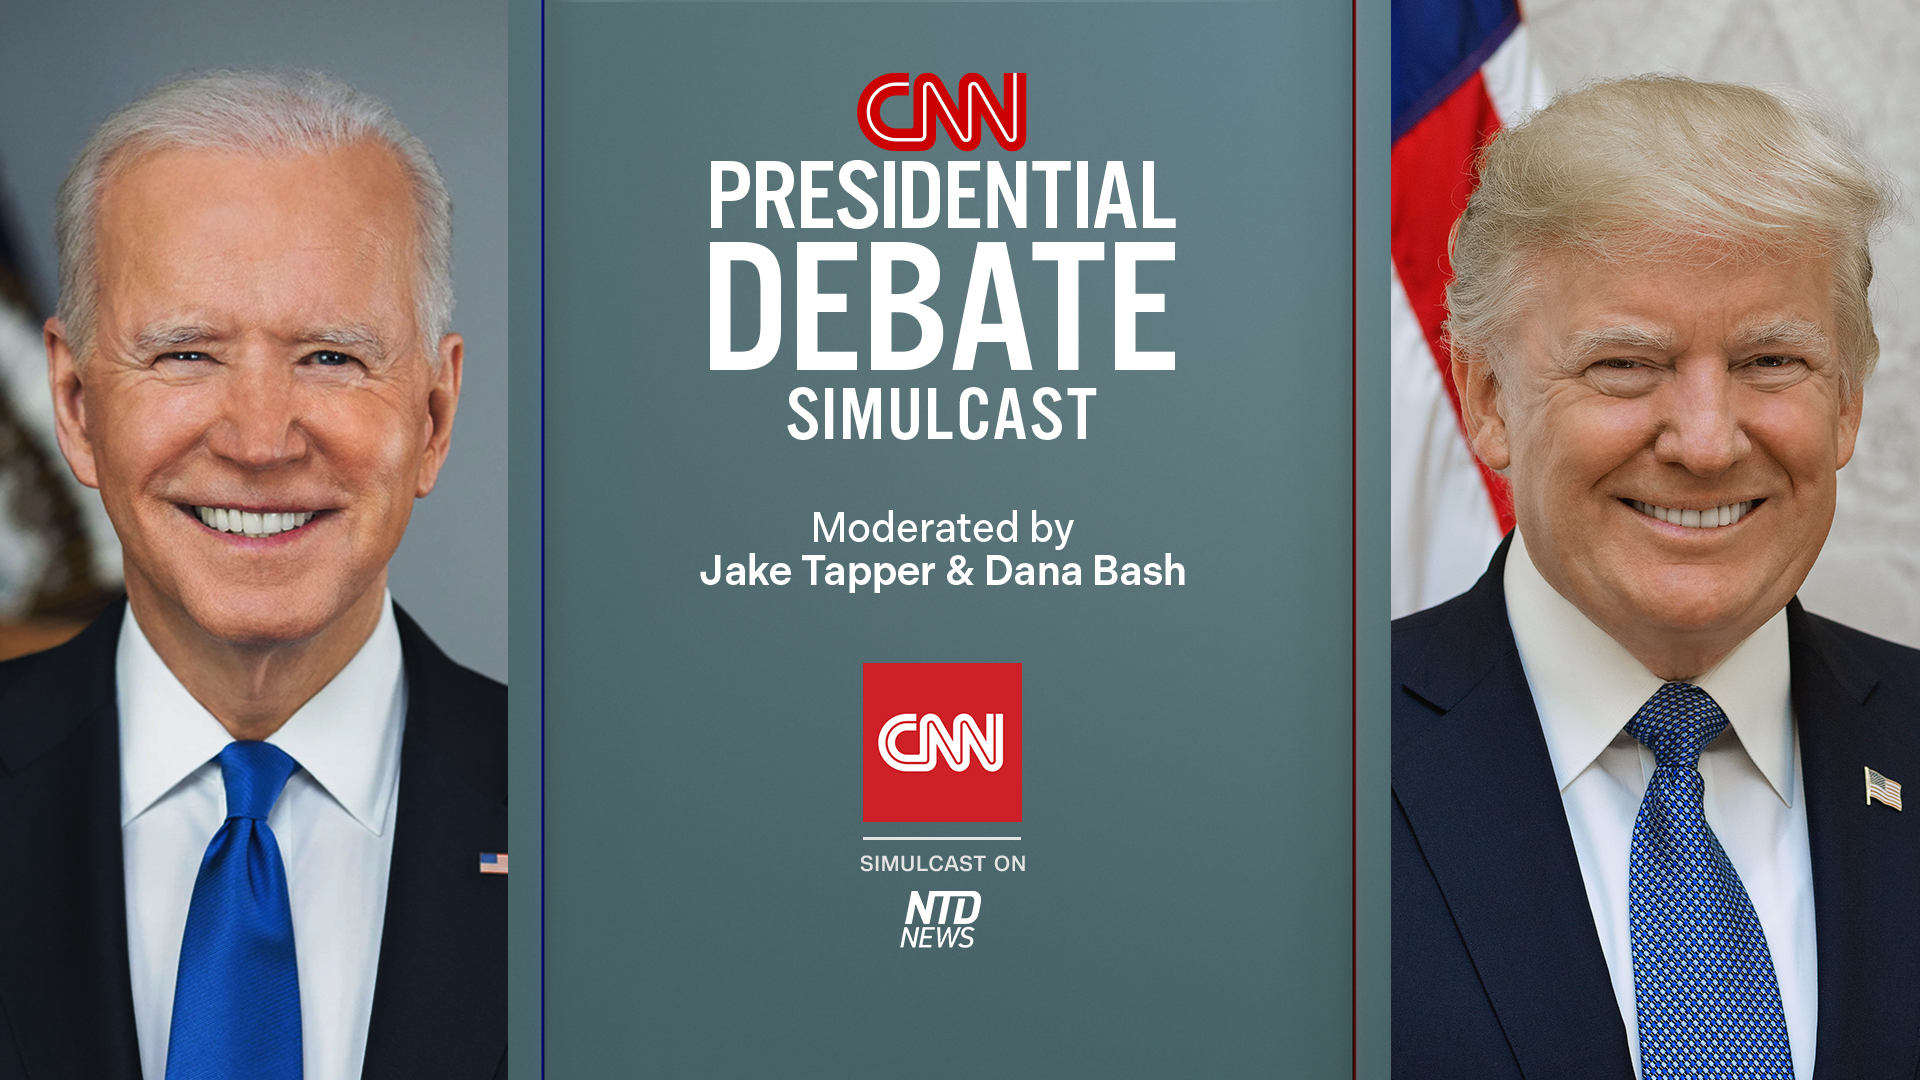 Presidential debate thursday